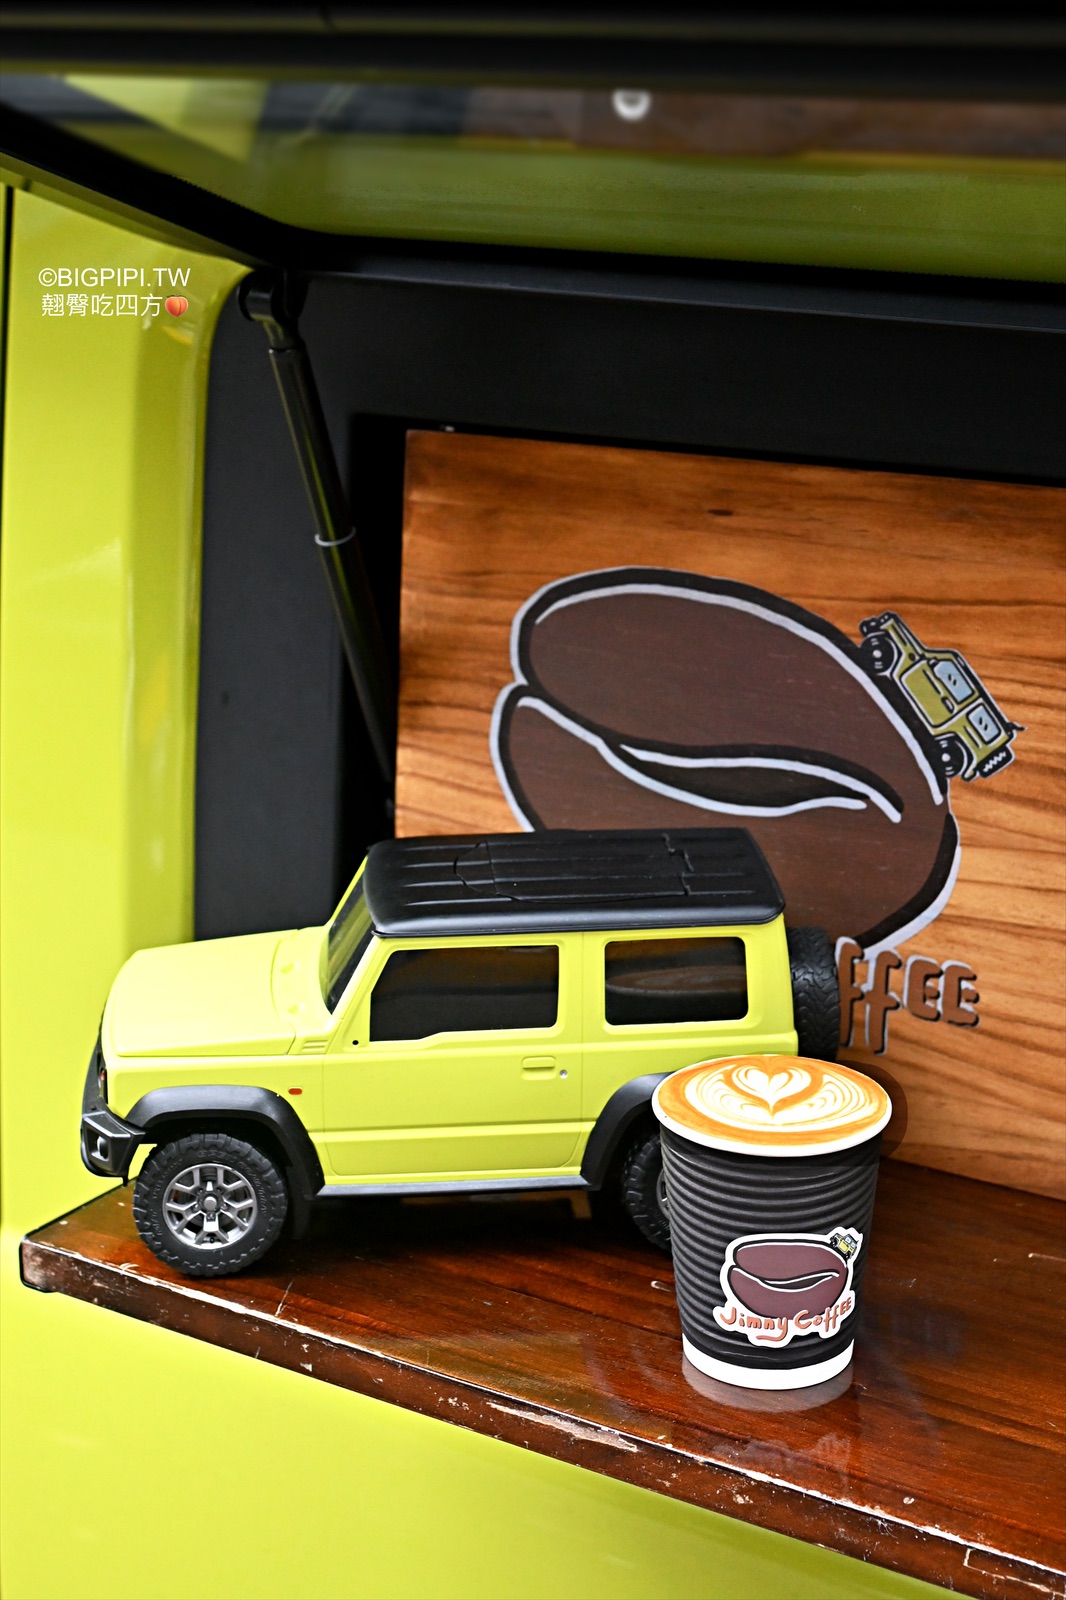 【全台美食】居米咖啡 Jimny Coffee，行動咖啡車 手沖咖啡推薦（菜單） @翹臀吃四方